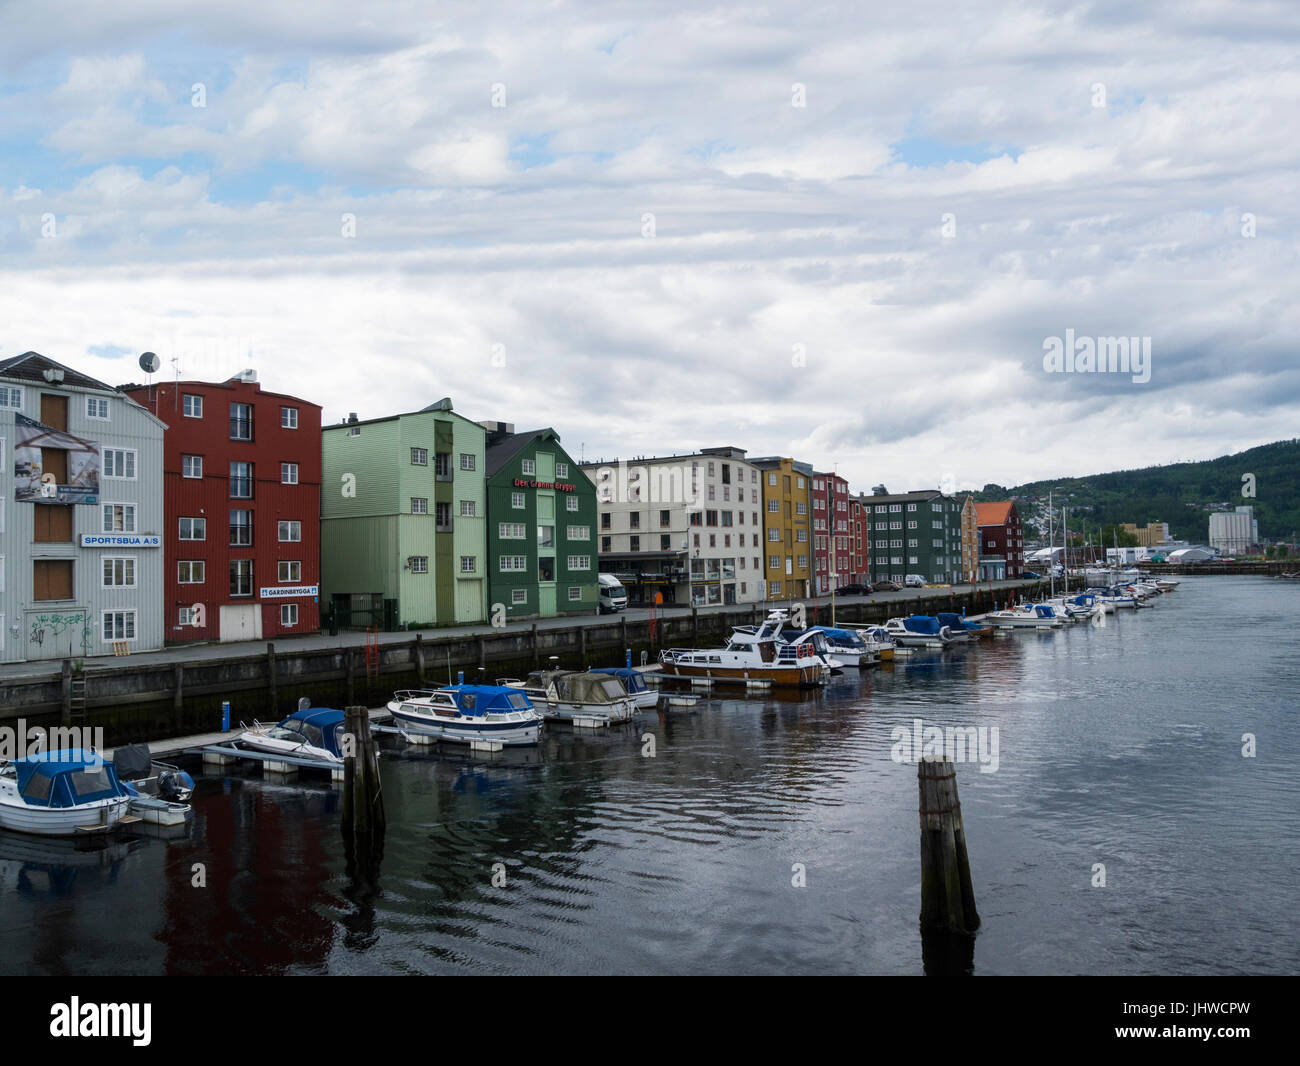 Afficher le long de la rivière Nidelva à Bryggene quais boutiques sur Fjordgate Trondheim en Norvège, avec des hors-bords amarrés Banque D'Images